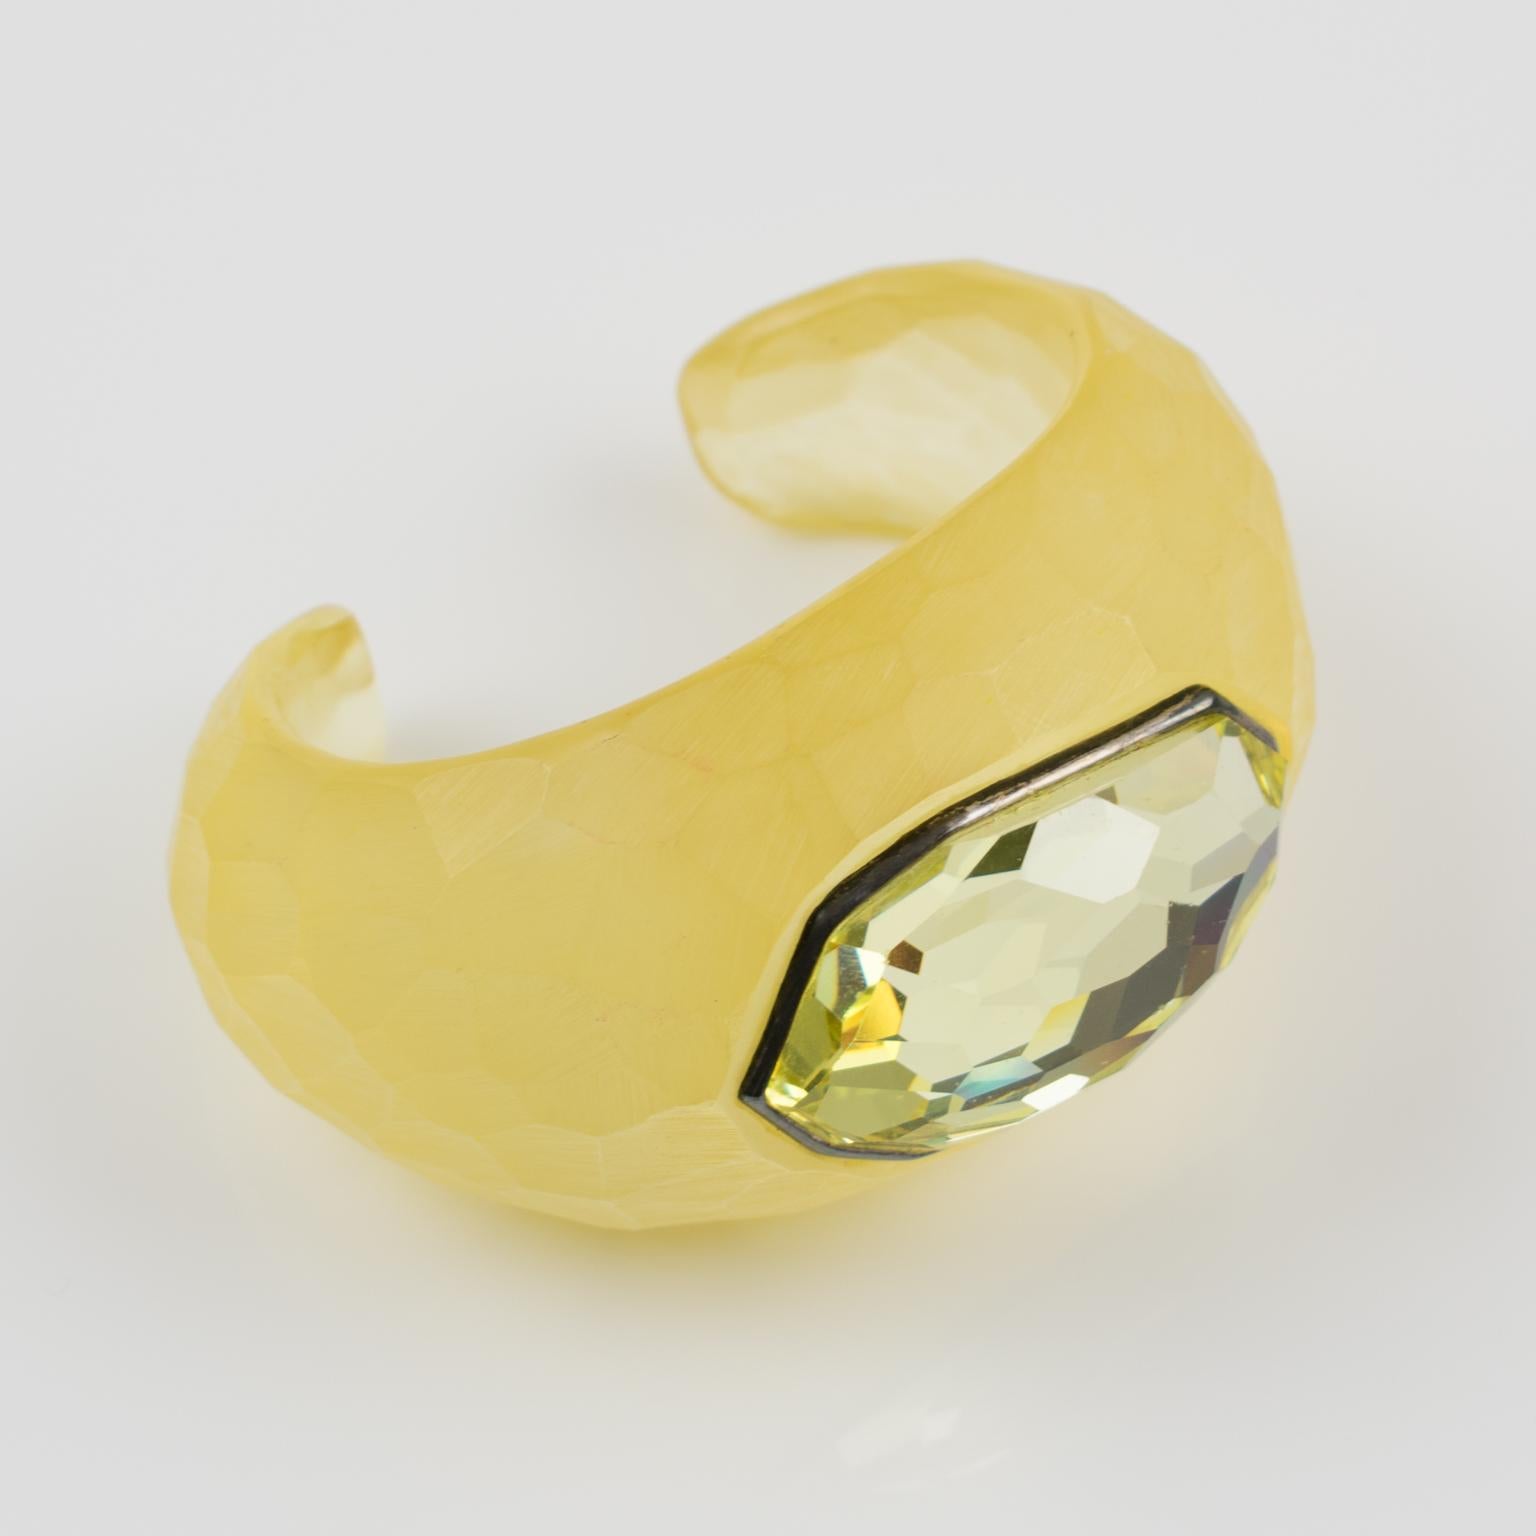 Magnifique strass Daniel Swarovski Paris taillé en cristal sur un bracelet manchette en Lucite. Ce bracelet en Lucite a été conçu par l'artiste française Aline Gui pour Swarovski et présente une manchette en Lucite de couleur jaune champagne avec